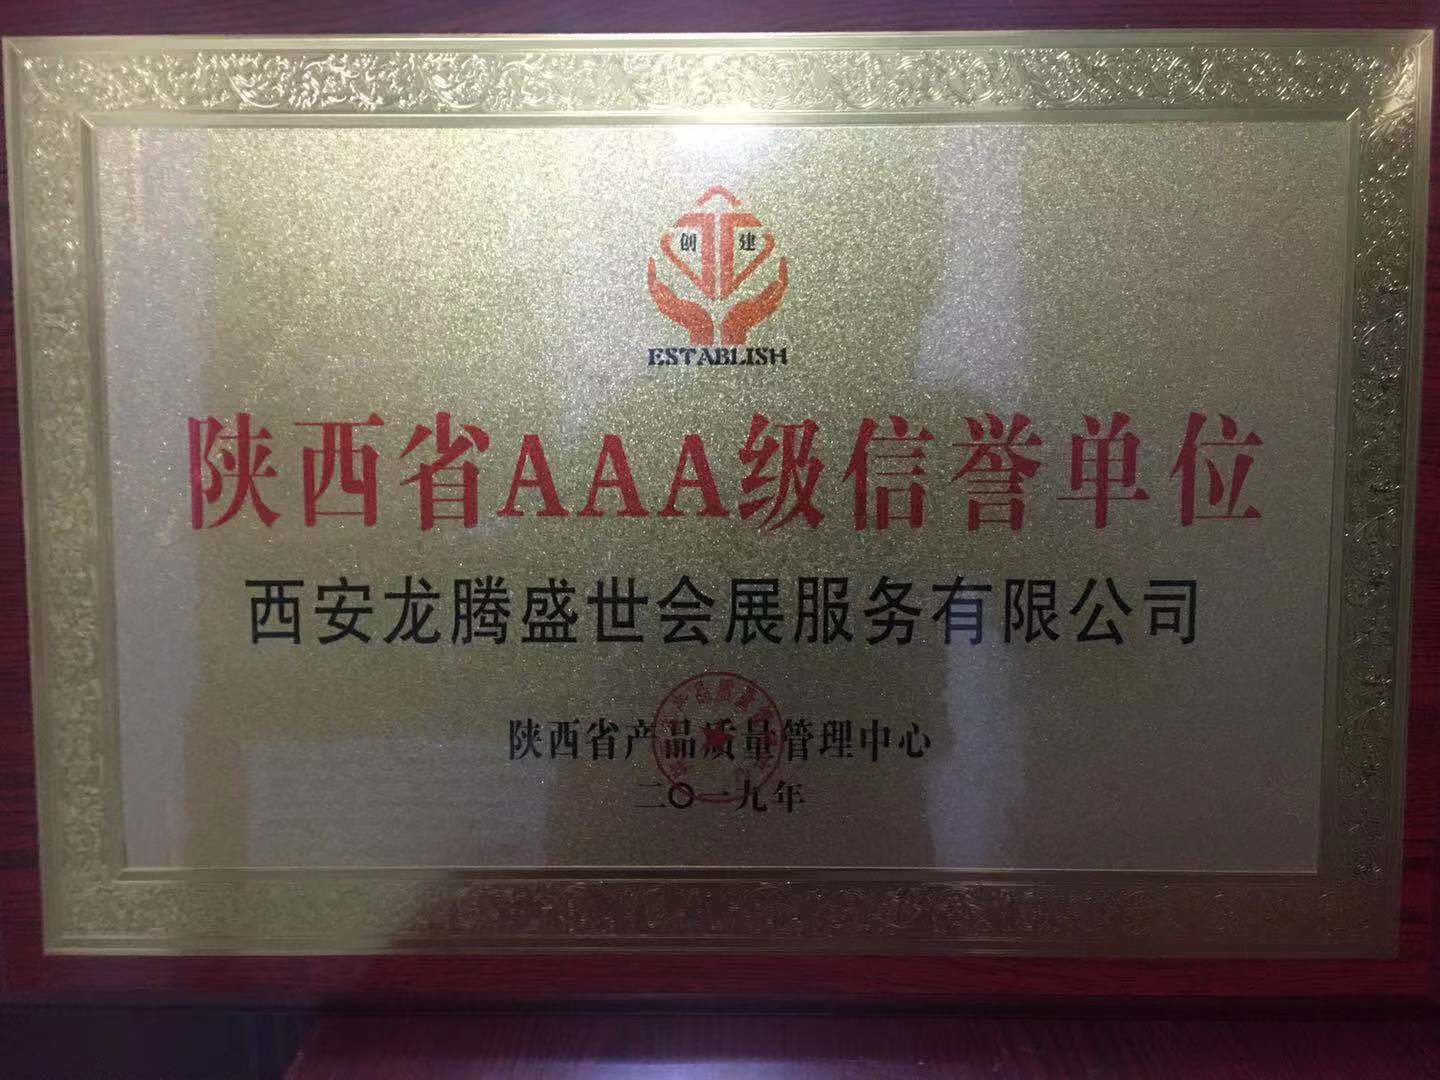 陝西省AAA級信譽單位